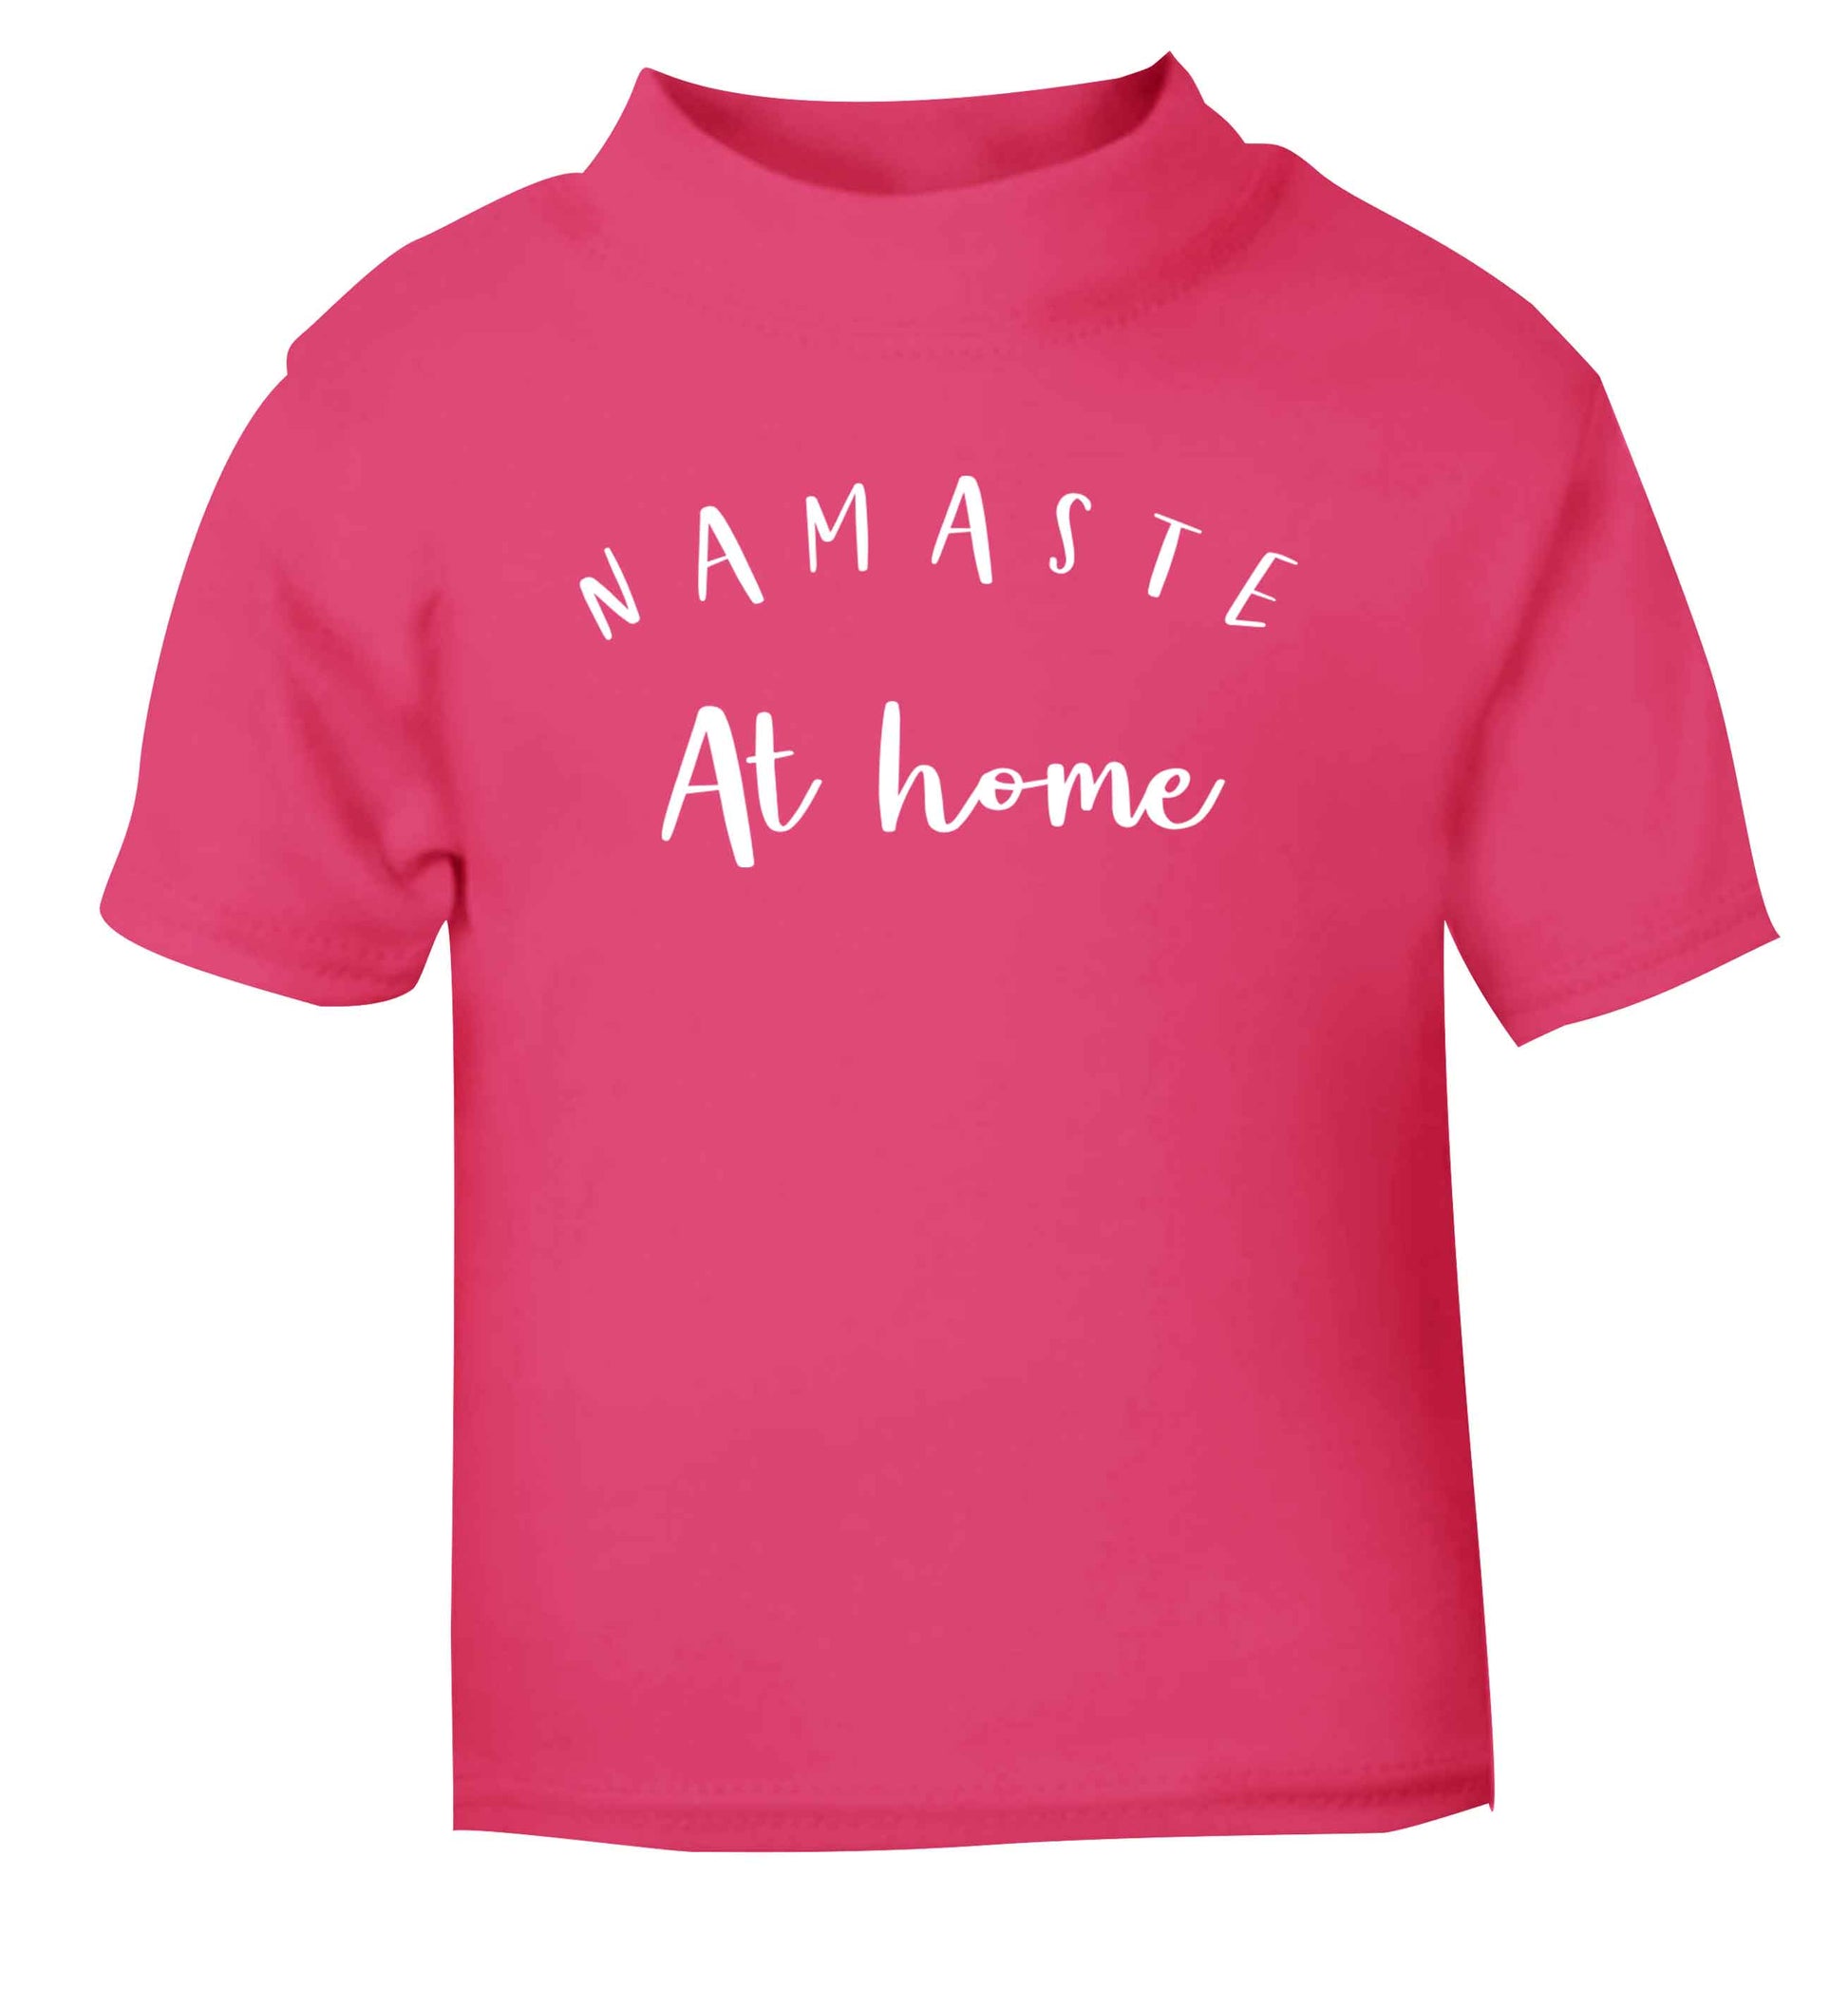 Namaste at home pink Baby Toddler Tshirt 2 Years